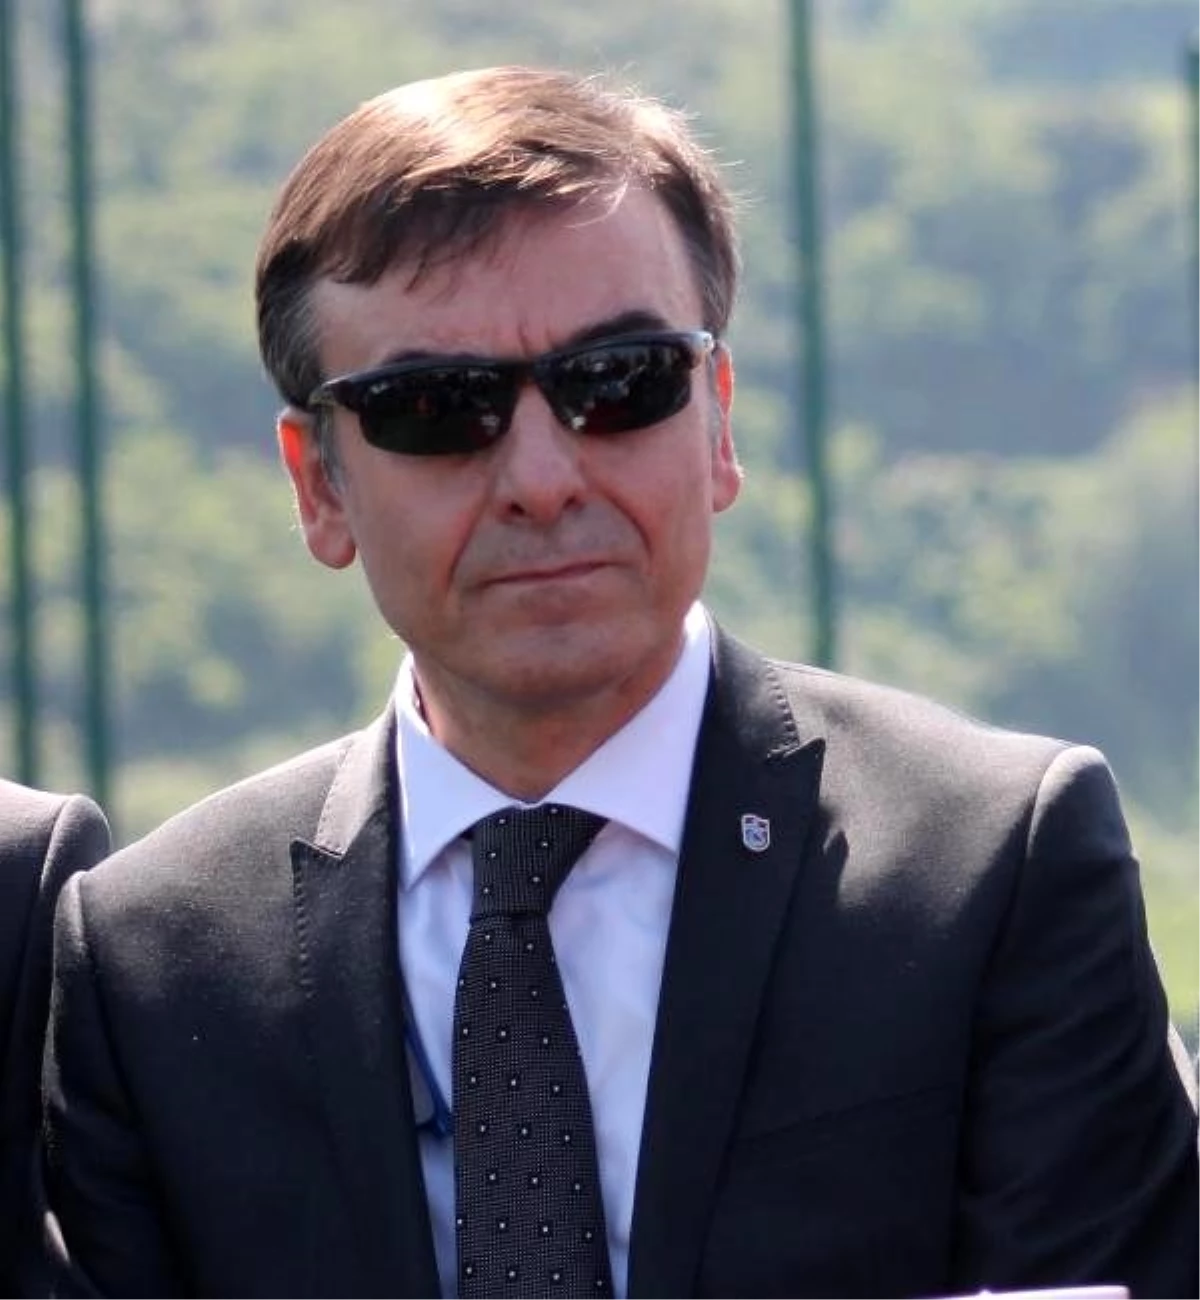 Trabzonsporlu Yönetici Egemen: "Yolun Sonunda Işığı Göreceğiz"